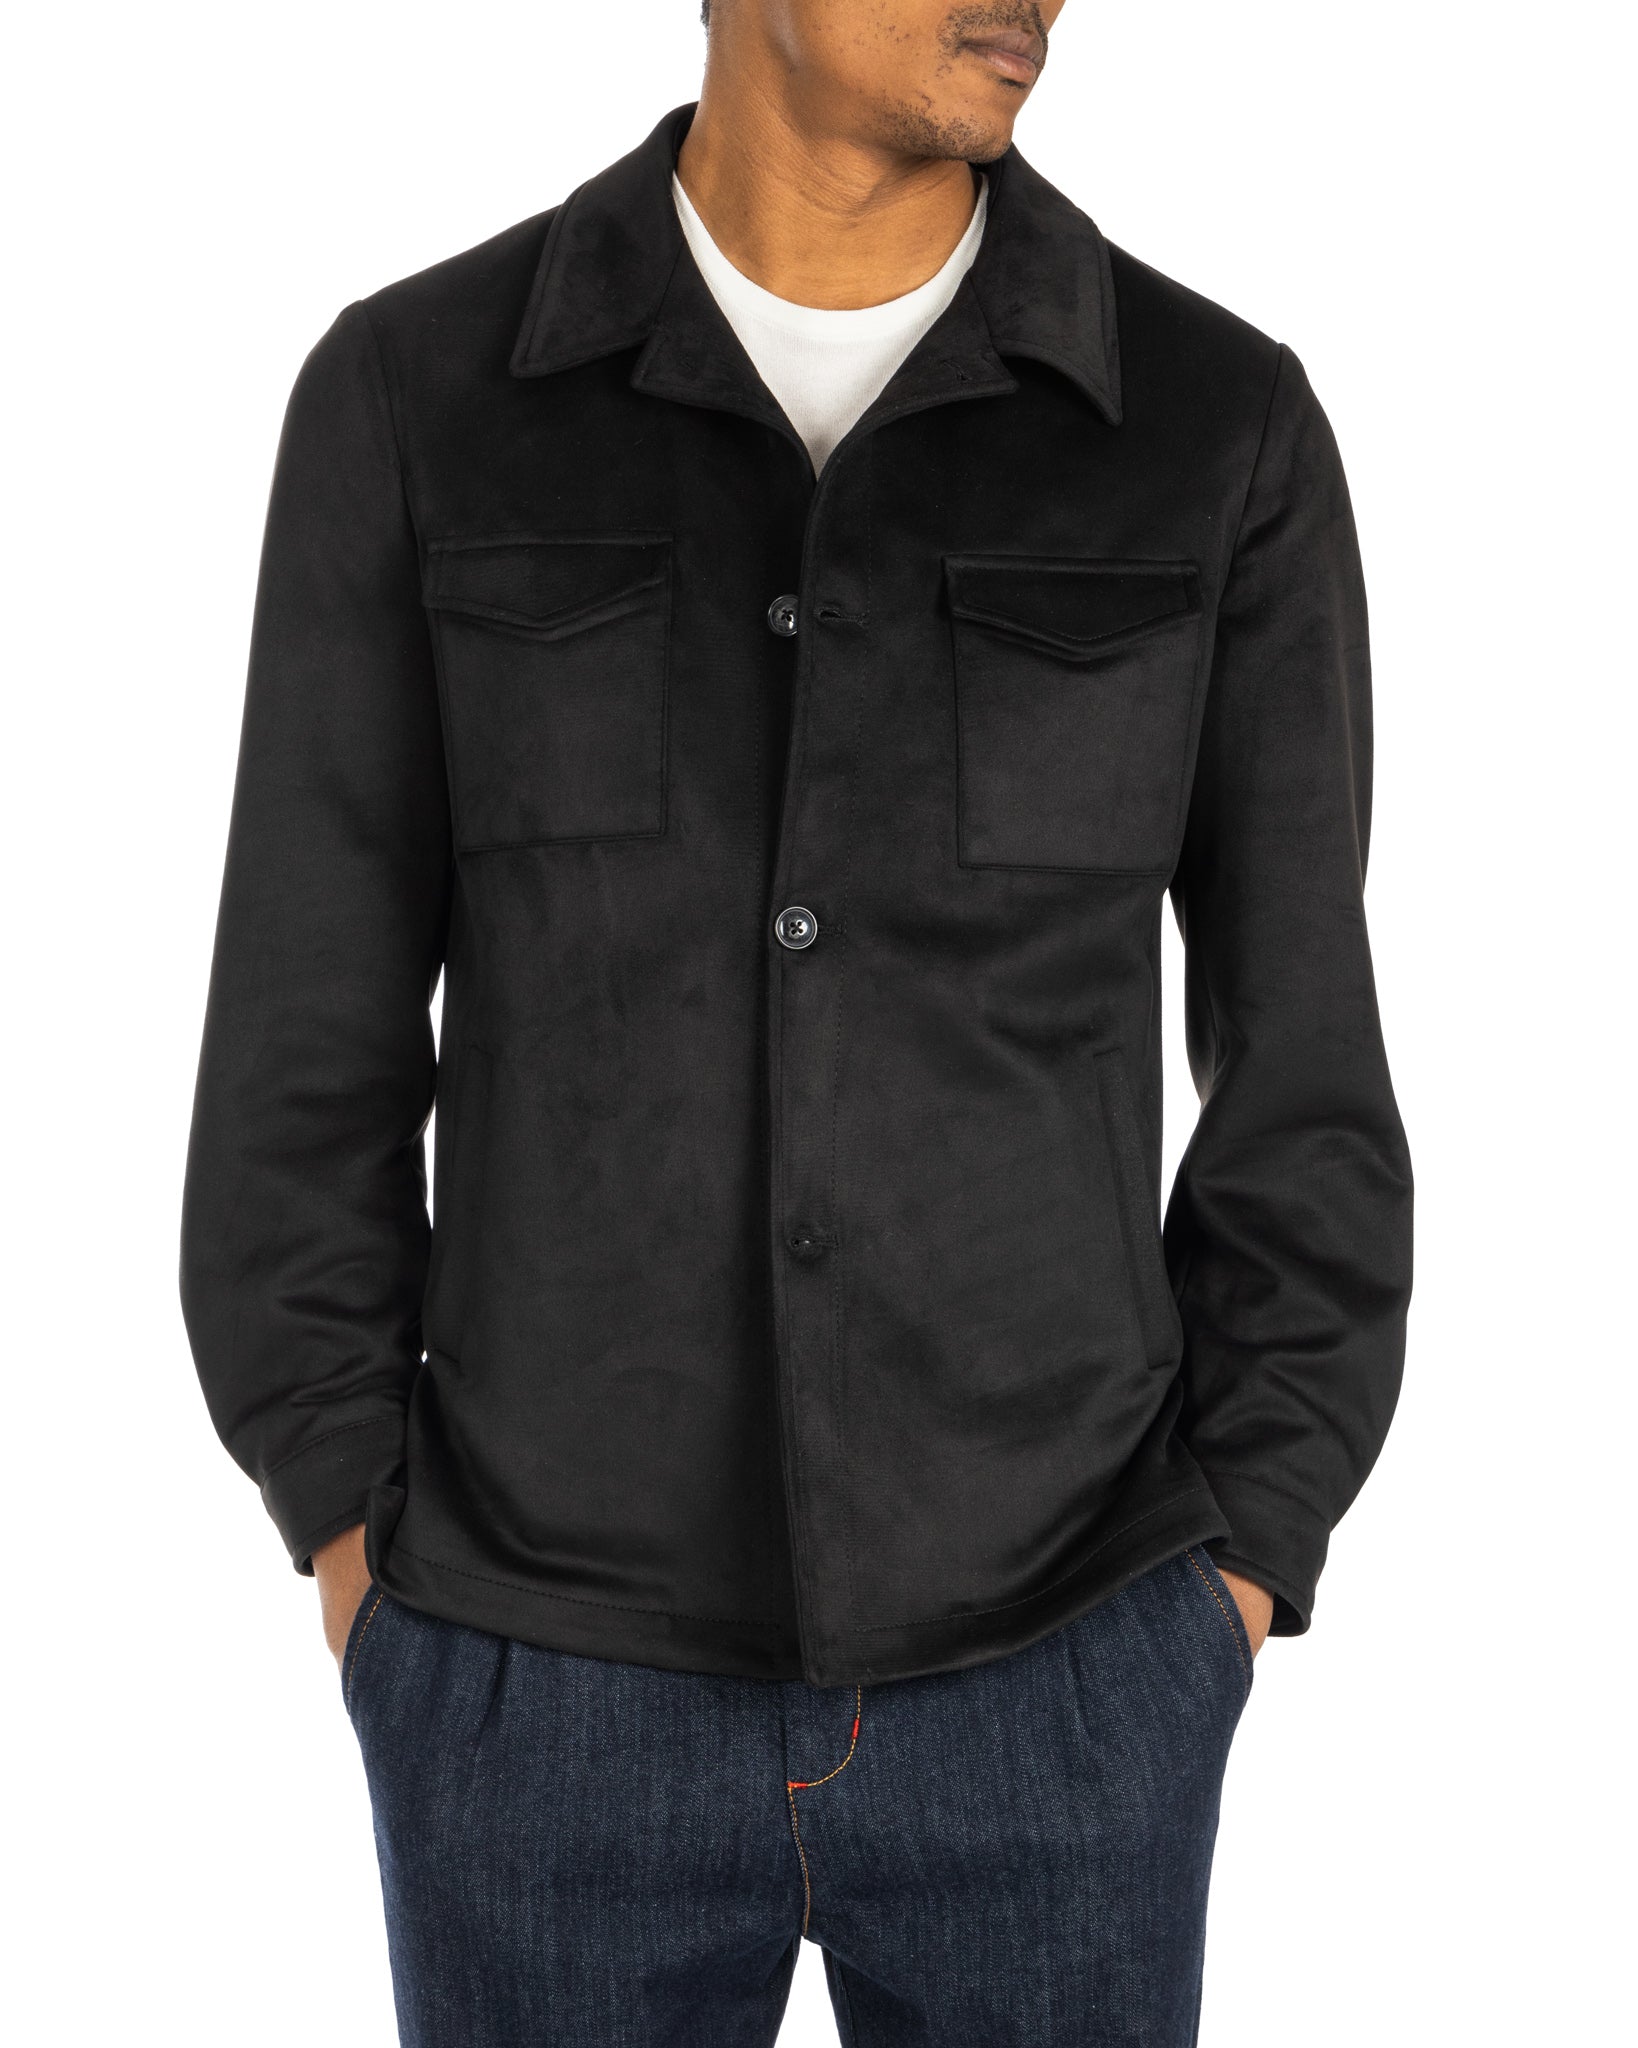 Meridion - black suede jacket